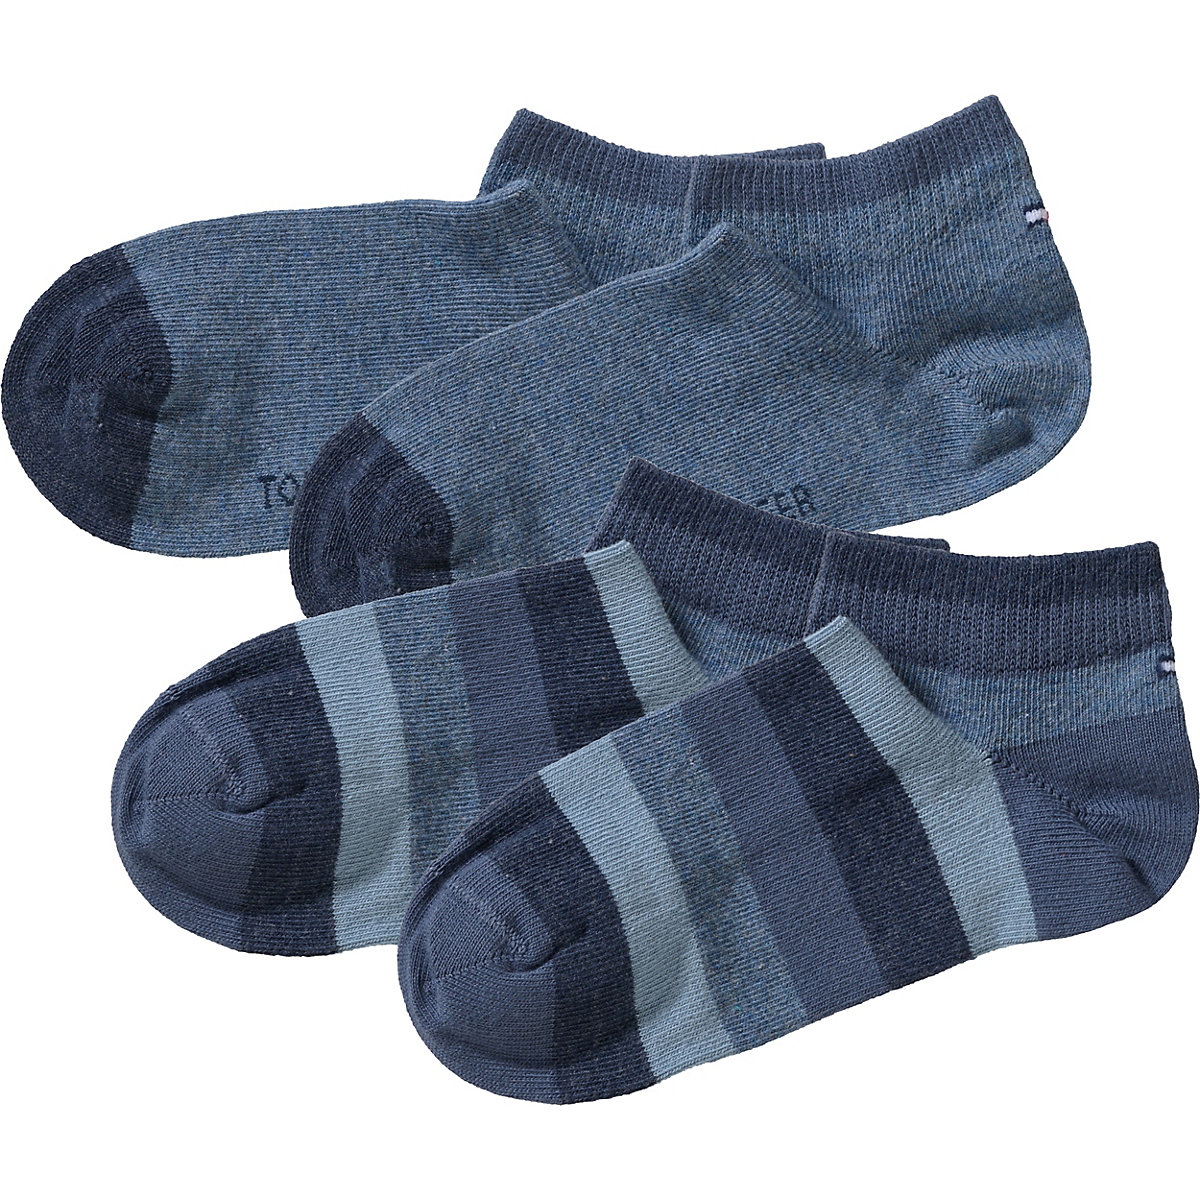 TOMMY HILFIGER Kinder Socken Doppelpack creme/hellblau